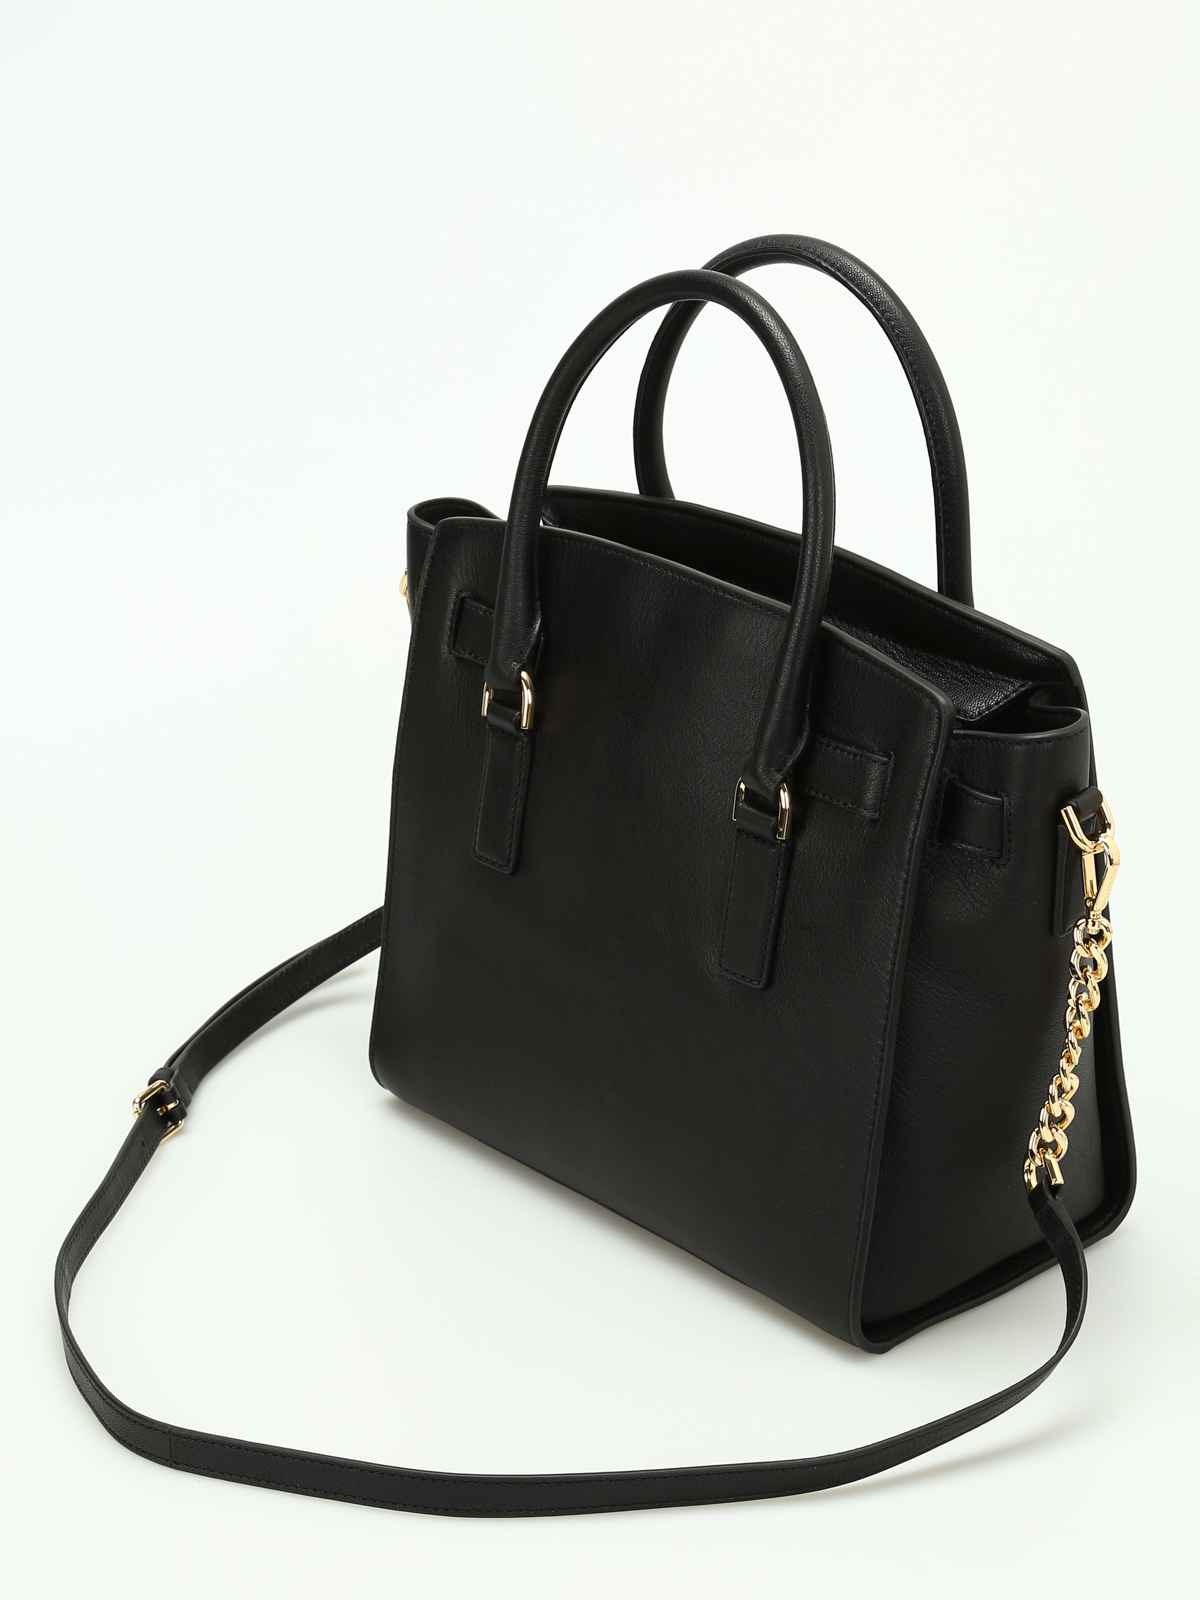 Totes bags Michael Kors - Hamilton grainy leather satchel - 30S7GHMS7L001